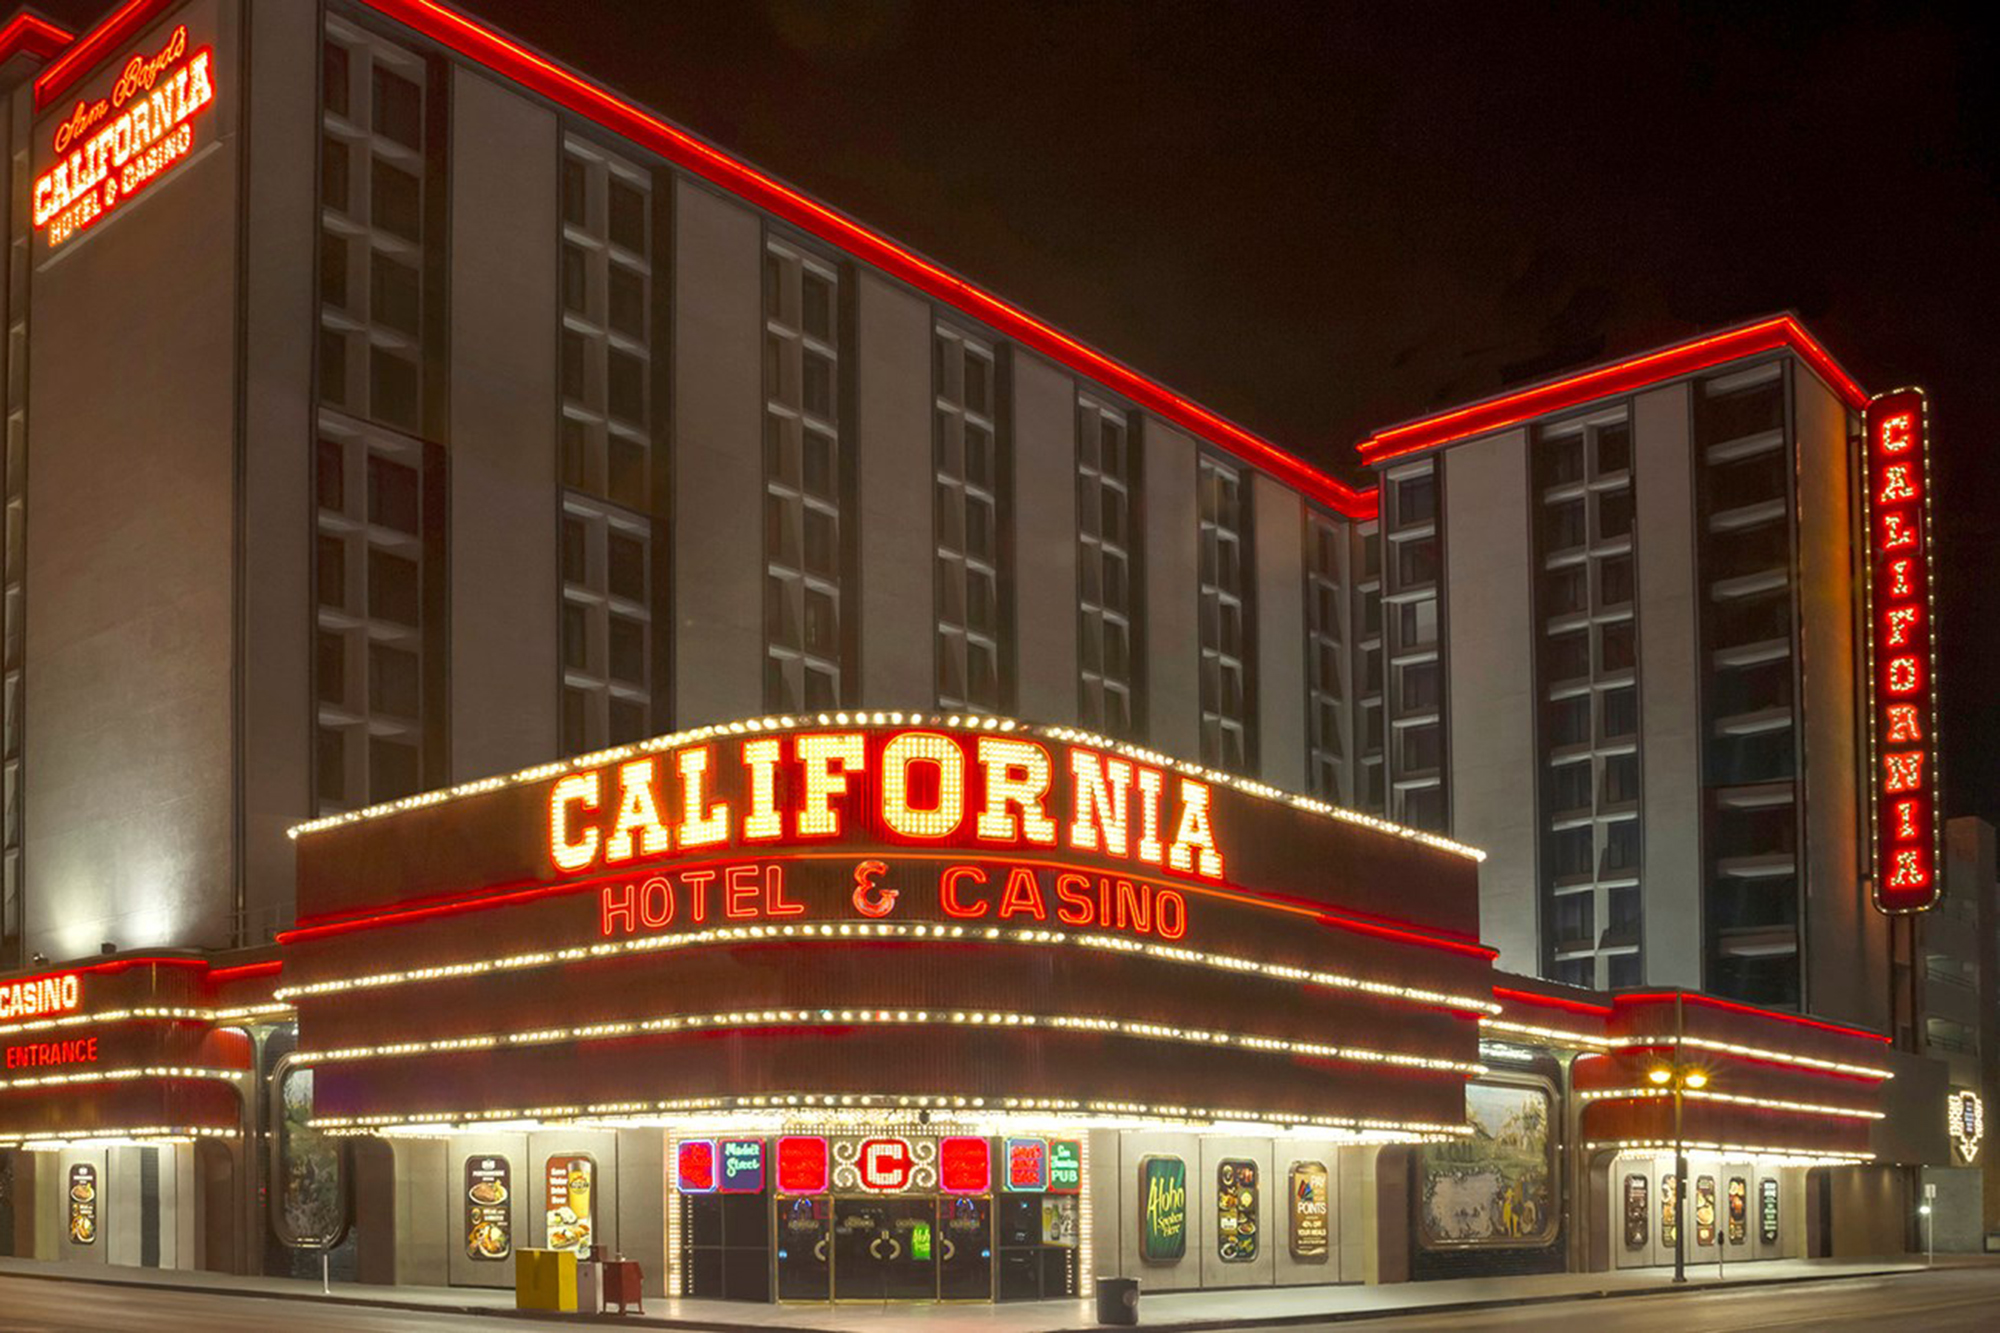 California Hotel and Casino - Wikipedia